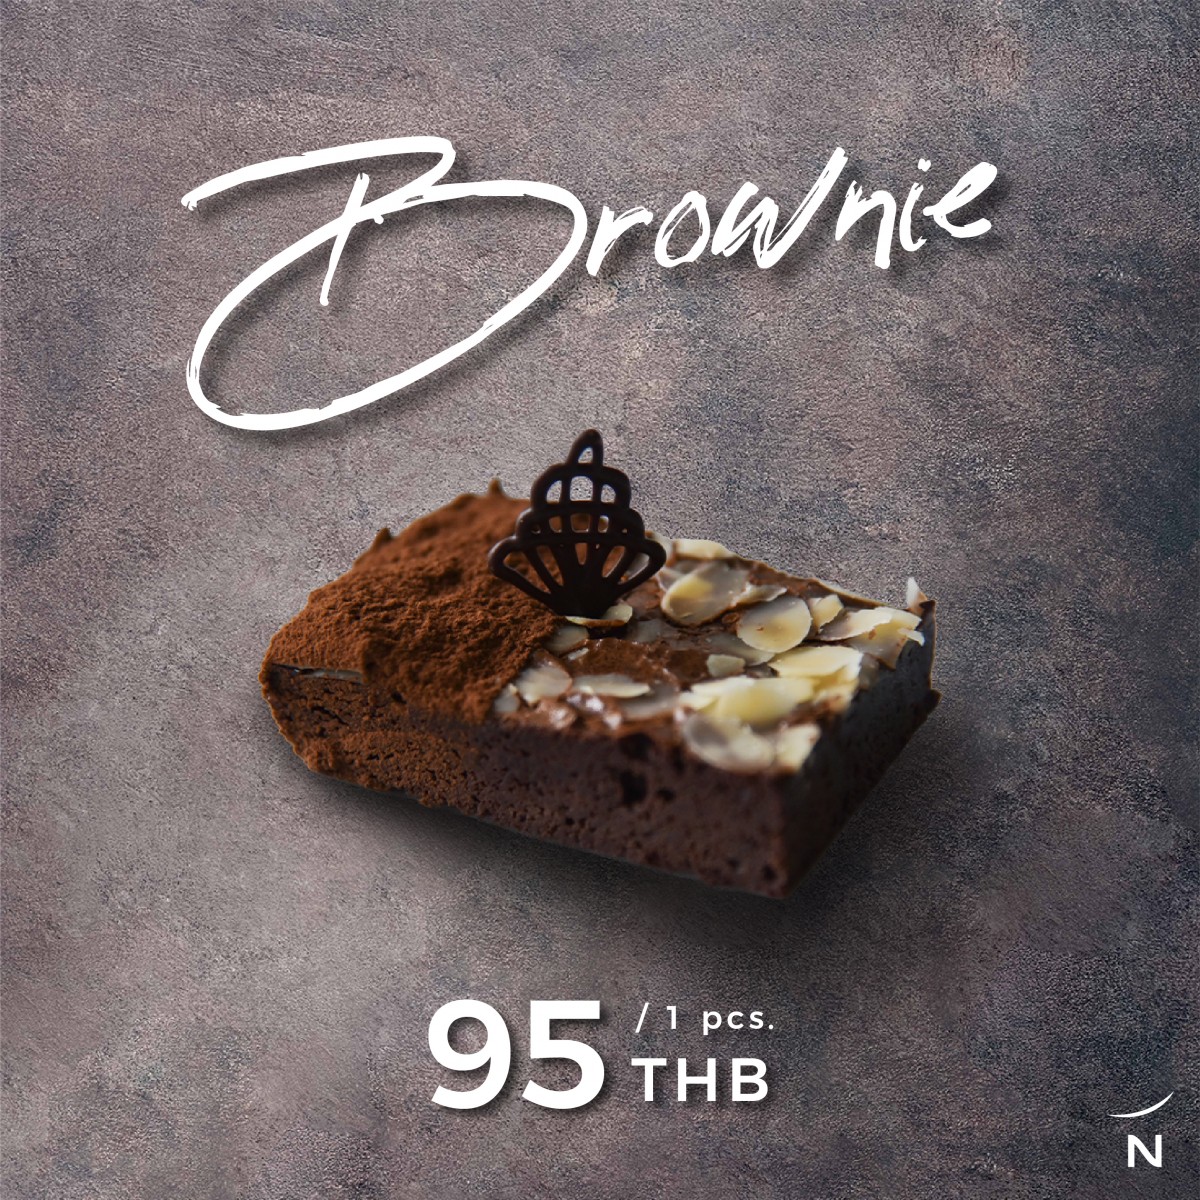 Cake Break: Brownie